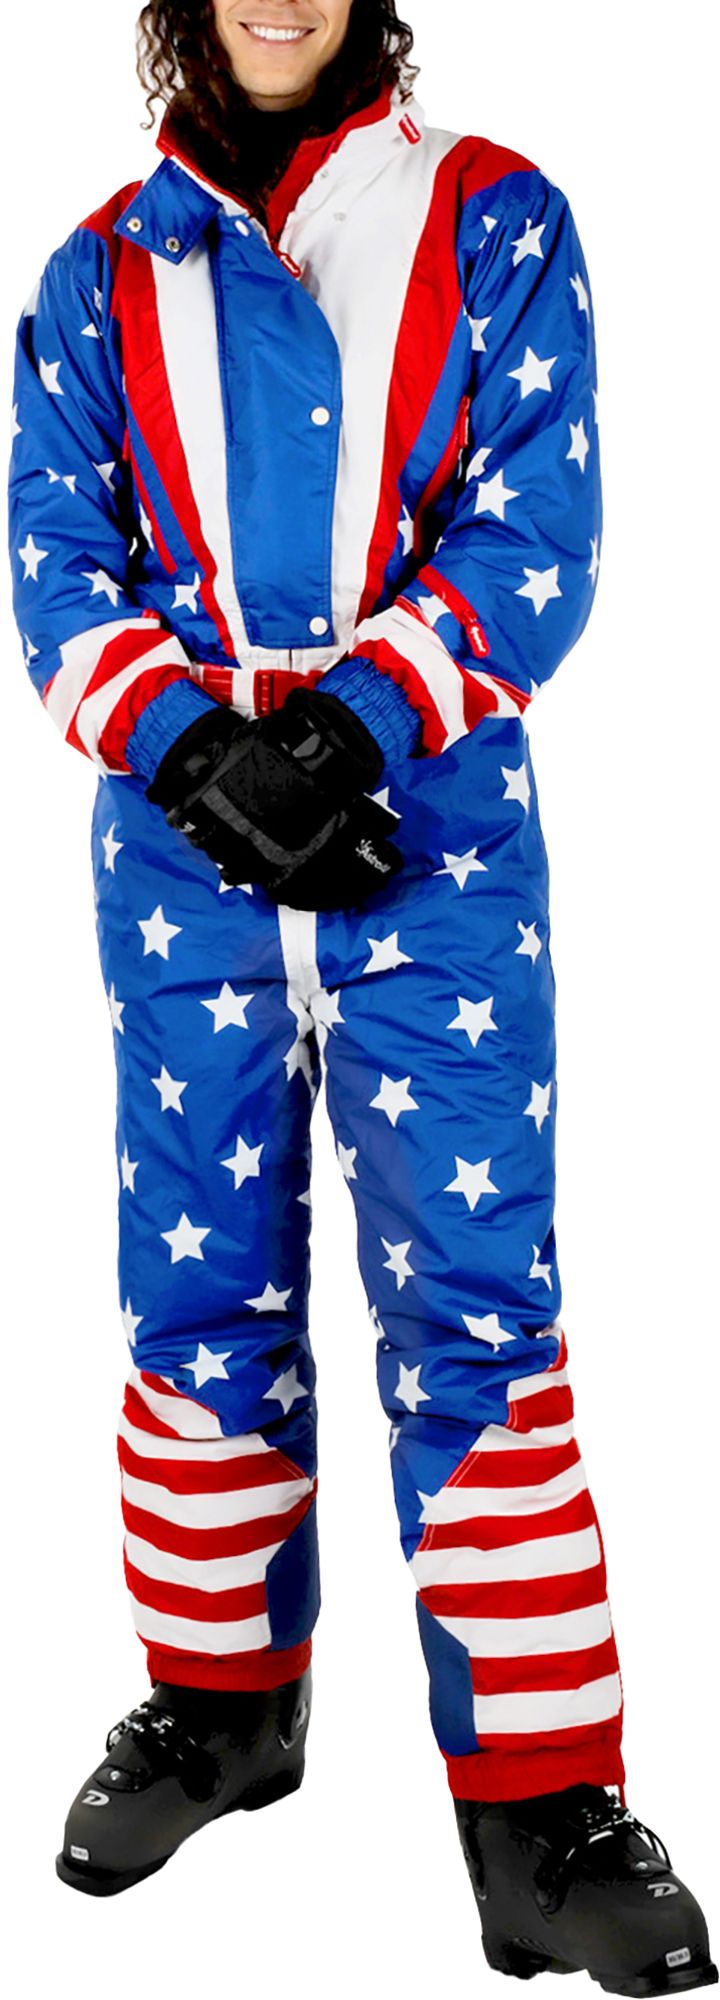 Photos - Ski Wear Tipsy Elves Men's Americana Snow Suit, XL, Blue 22DBPMMMRCNSKSTXXMOU